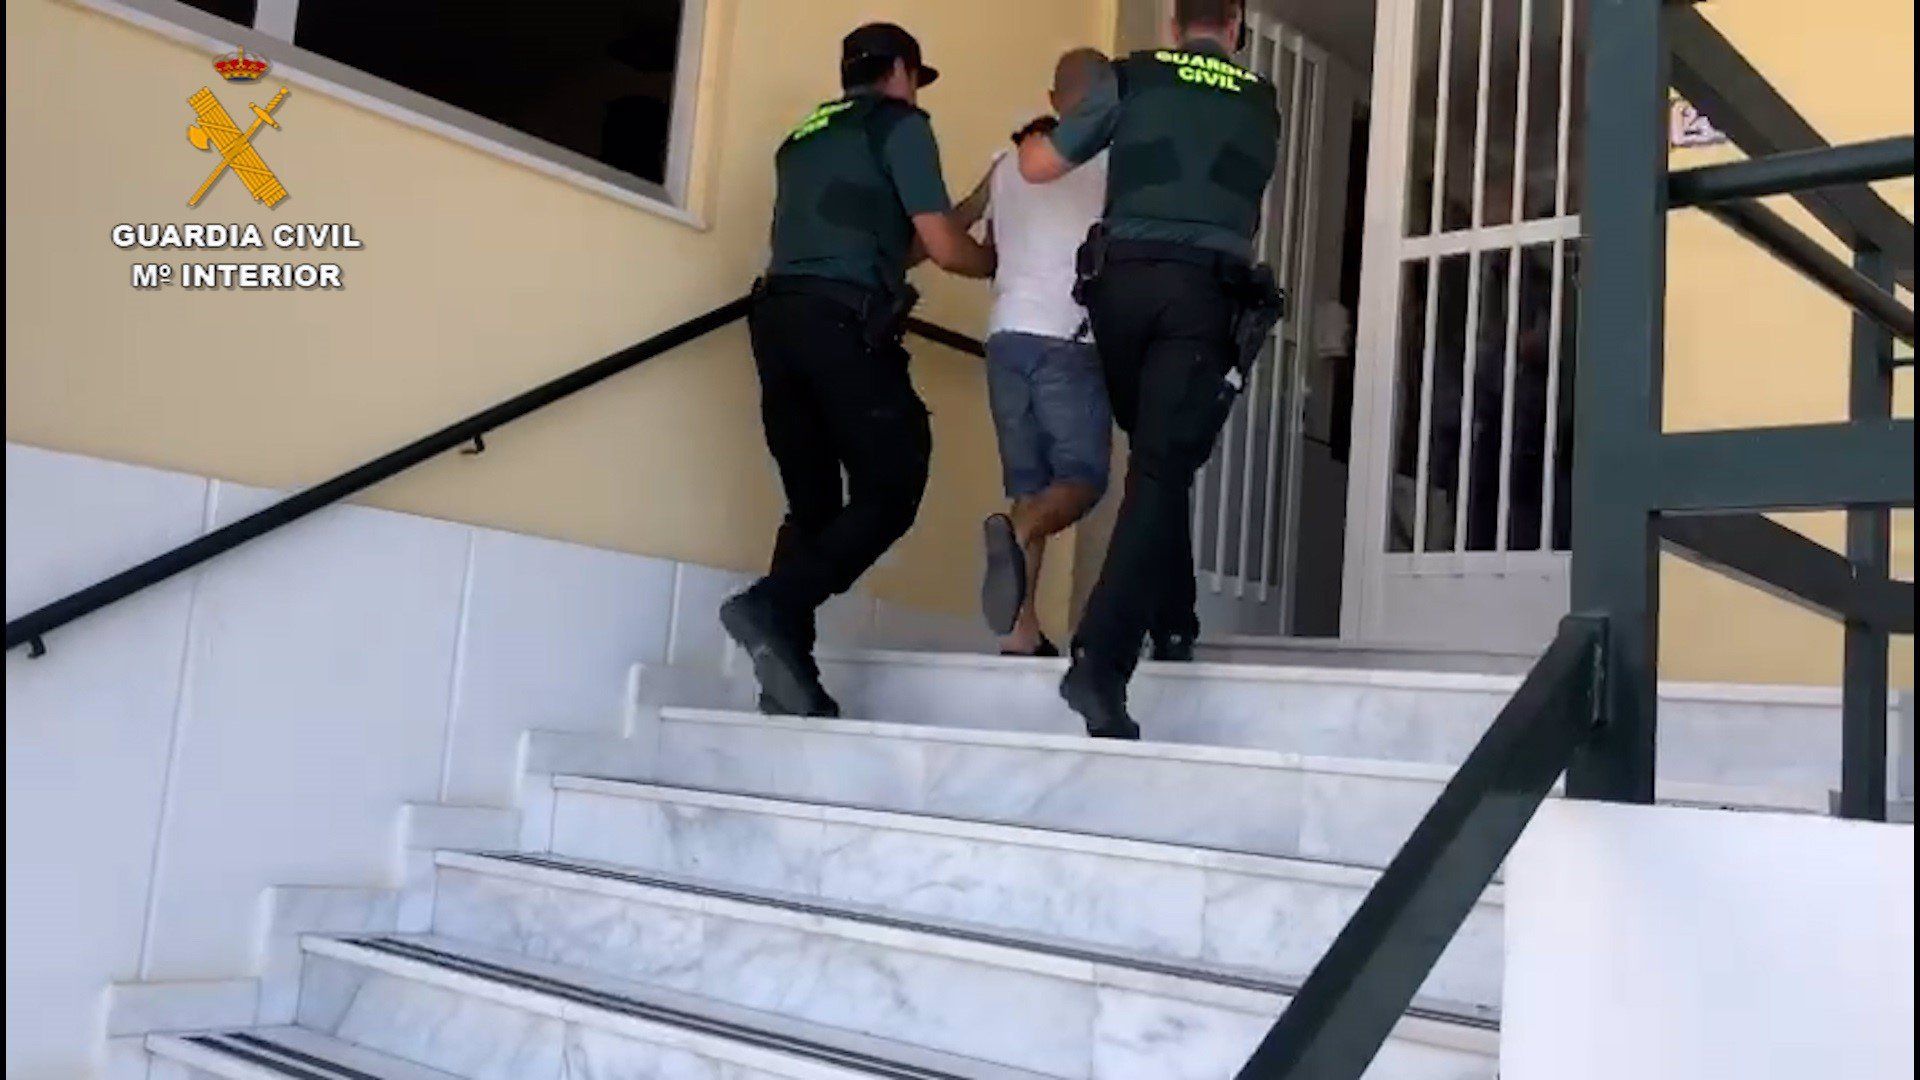 La Guardia Civil, deteniendo a un individuo, en una imagen de archivo. Un hombre apuñala a su pareja en el portal de su vivienda.